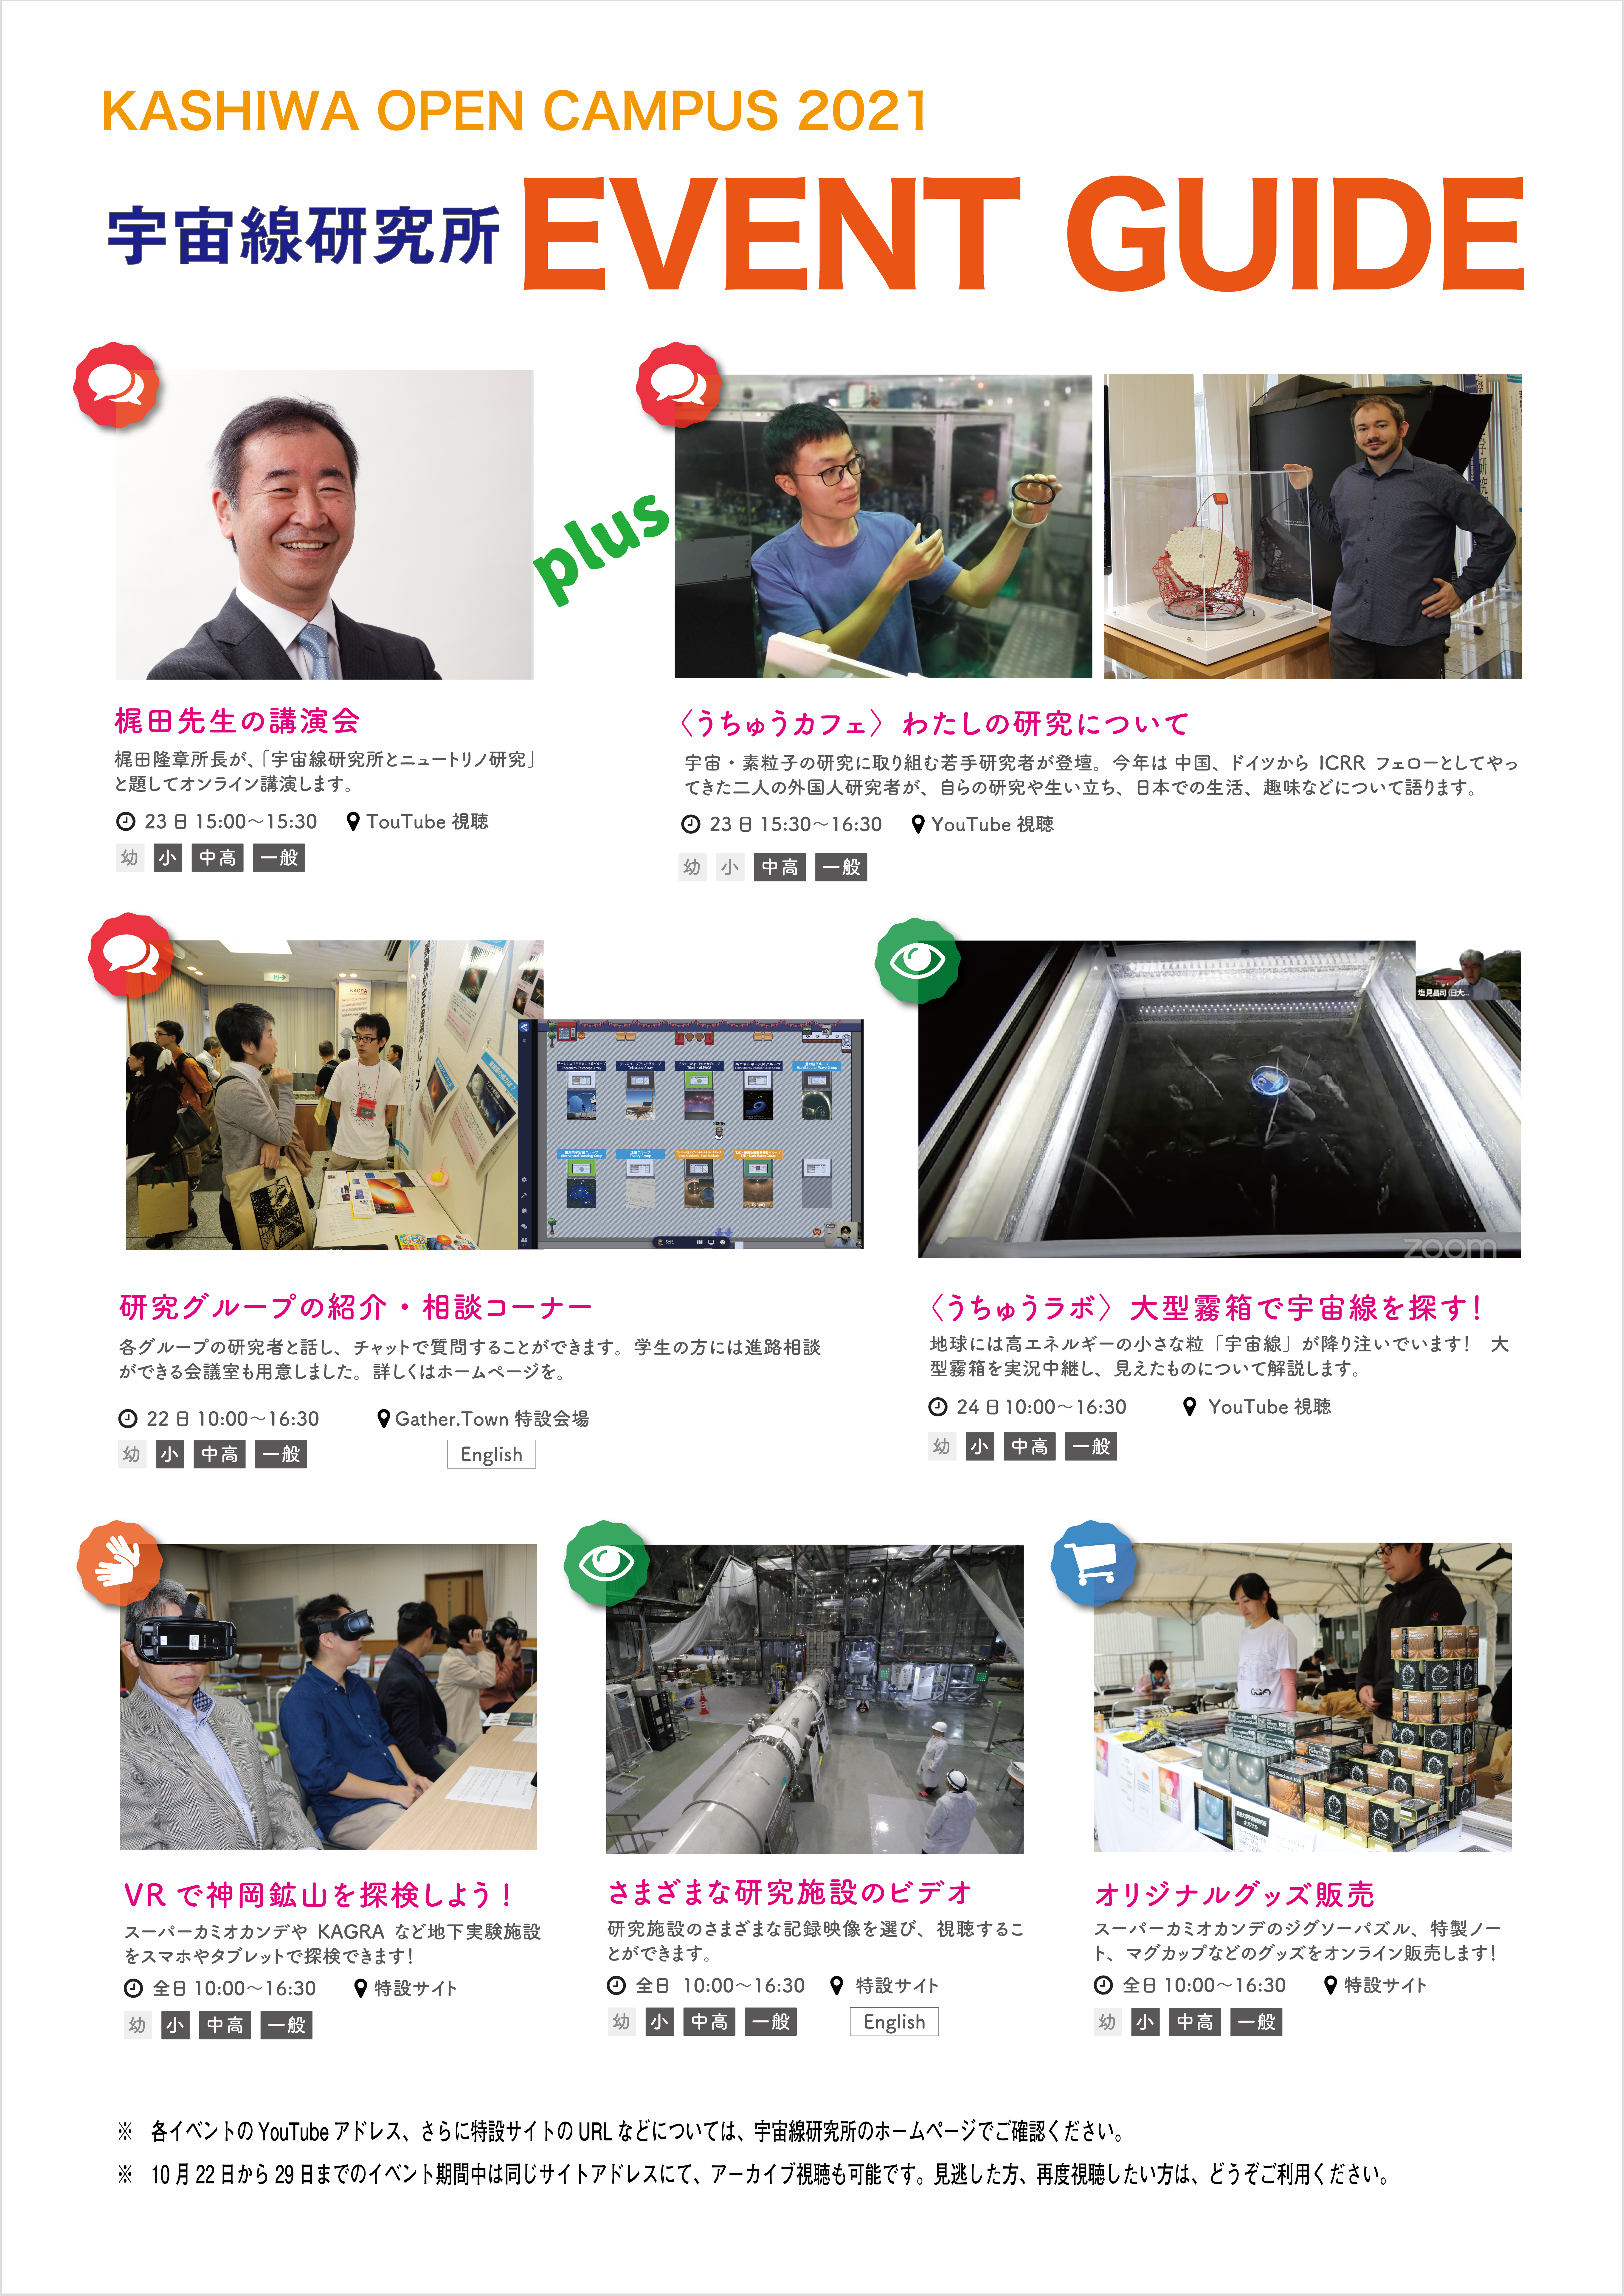 【実施レポートを掲載】10.22-29 東京大学柏キャンパス　オンライン一般公開2021